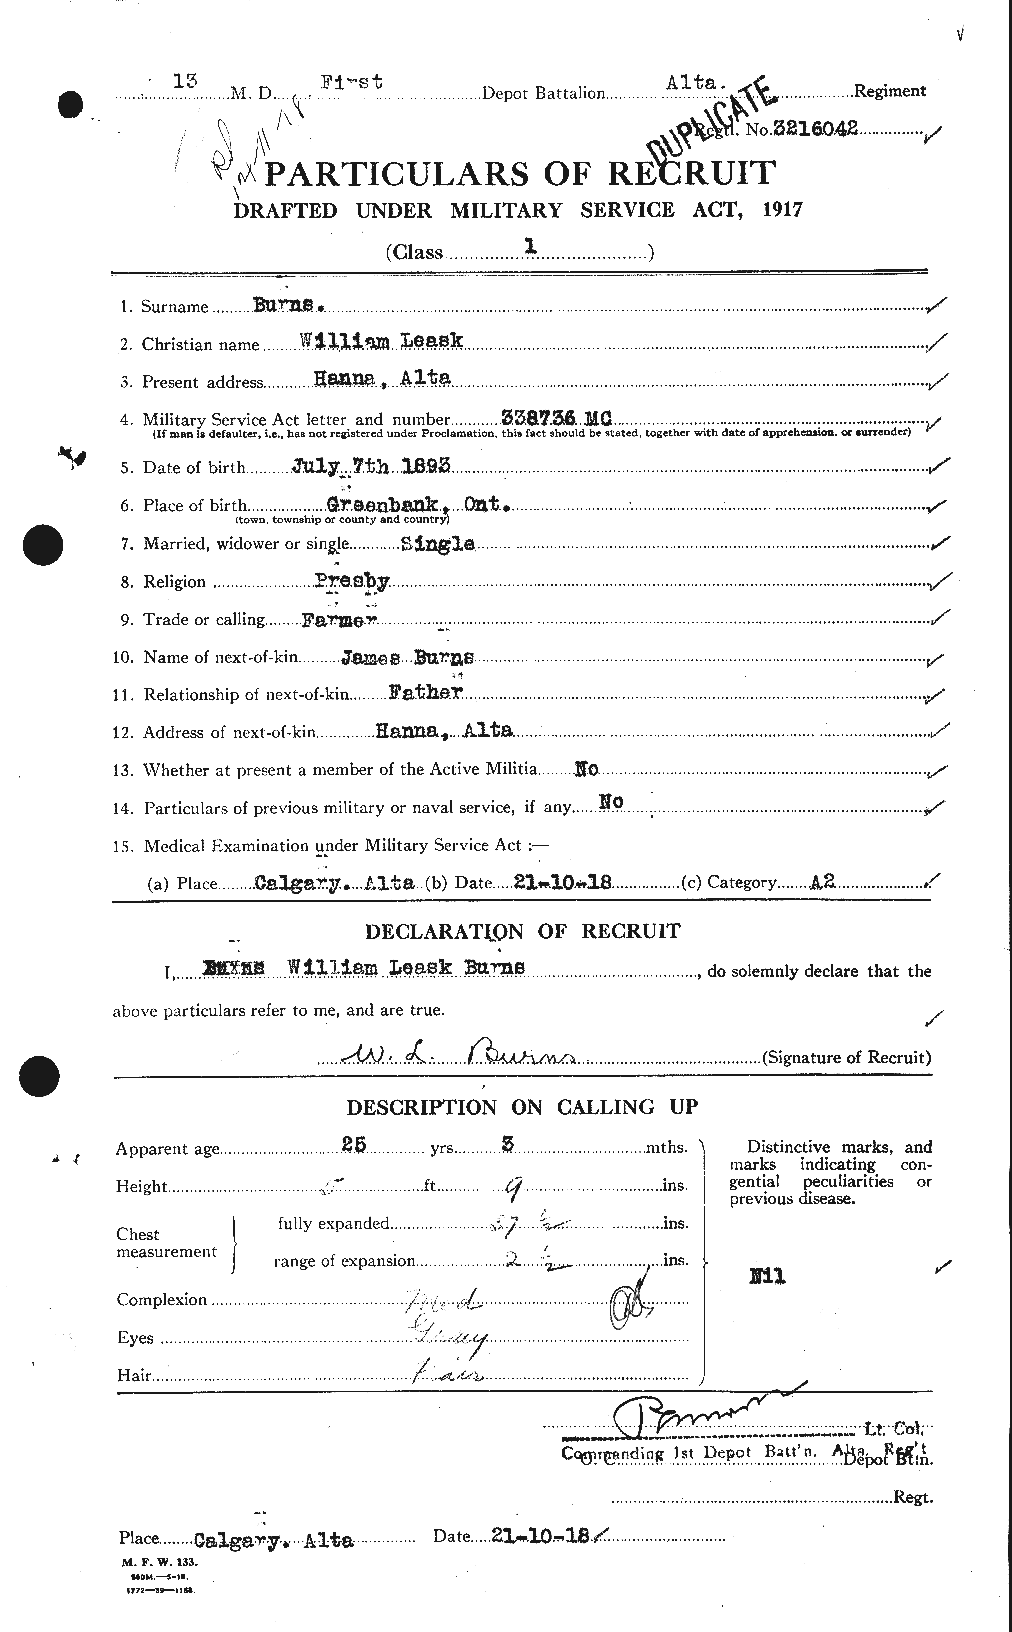 Dossiers du Personnel de la Première Guerre mondiale - CEC 273844a